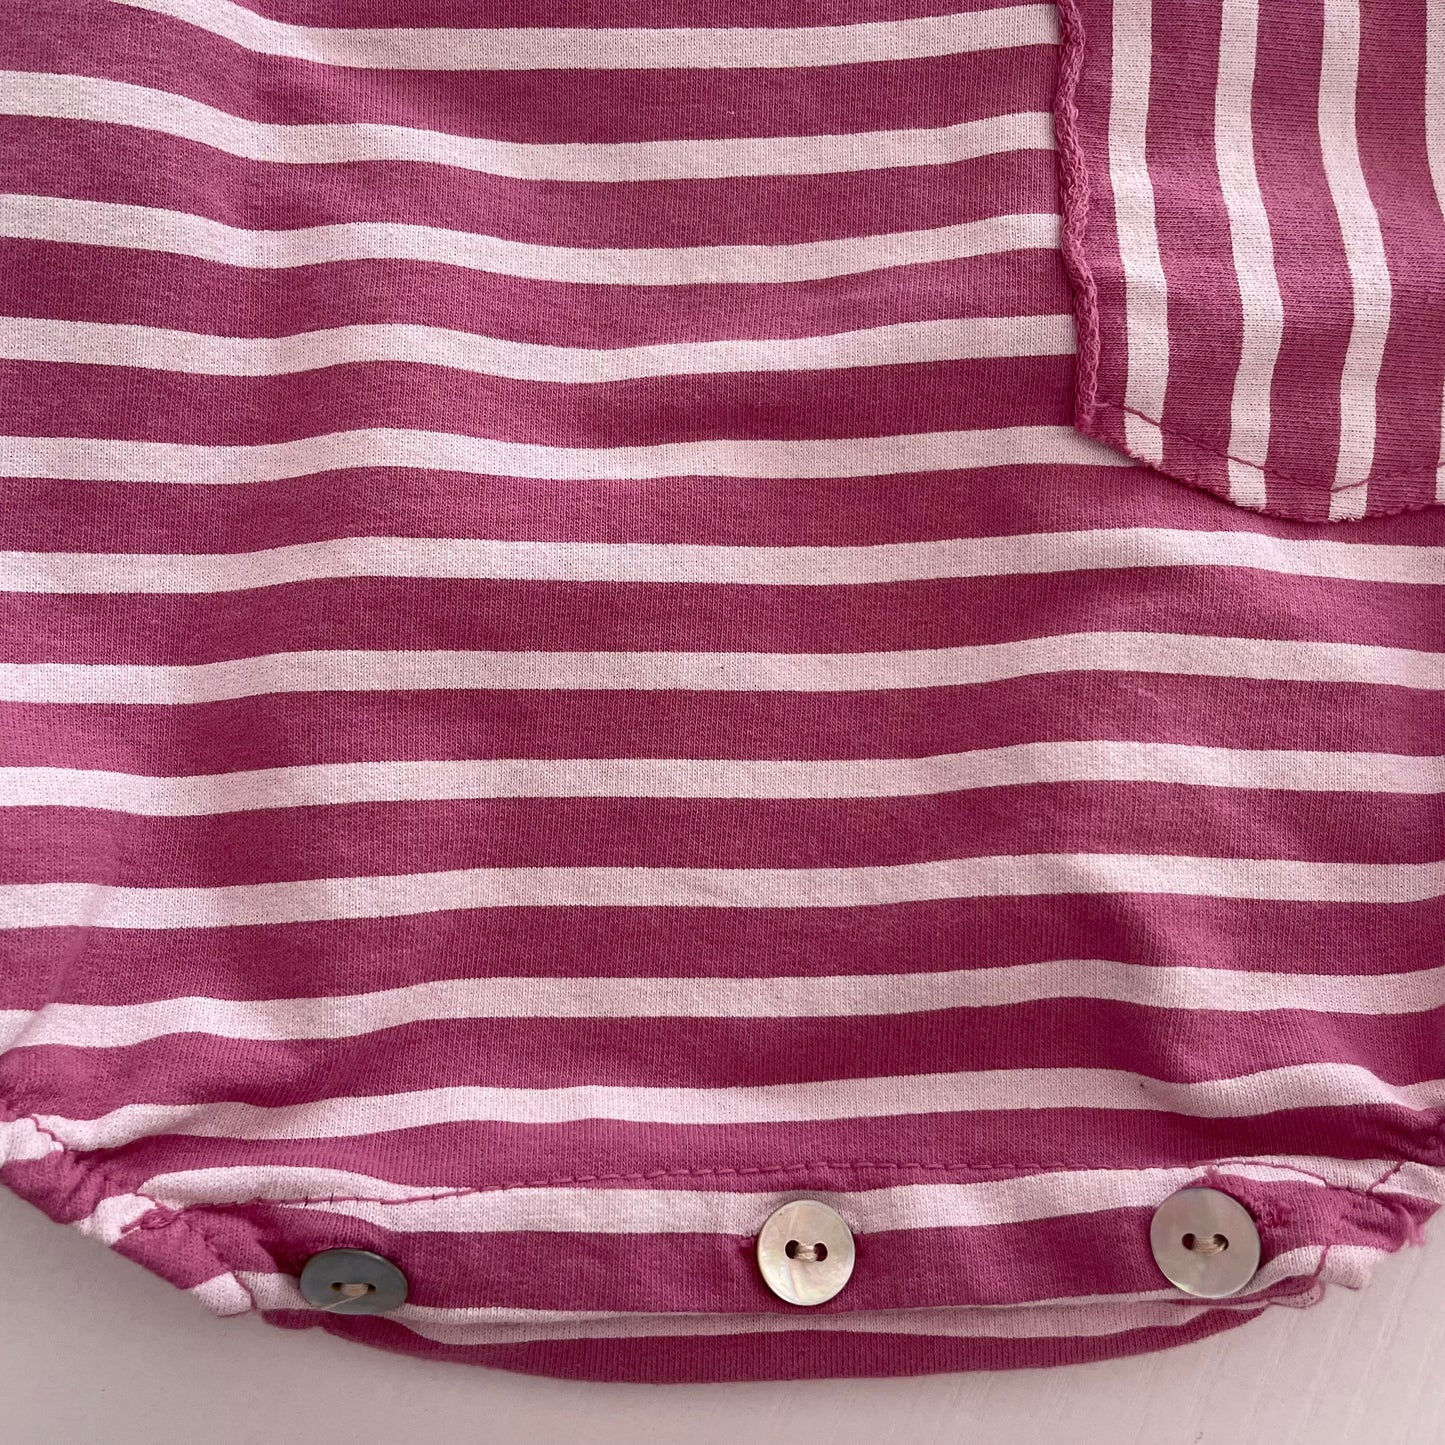 Comprar ranita de algodón para bebé niña. Color rosa viejo. Botones en la parte inferior. Ideal para la temporada de Primavera-Verano.